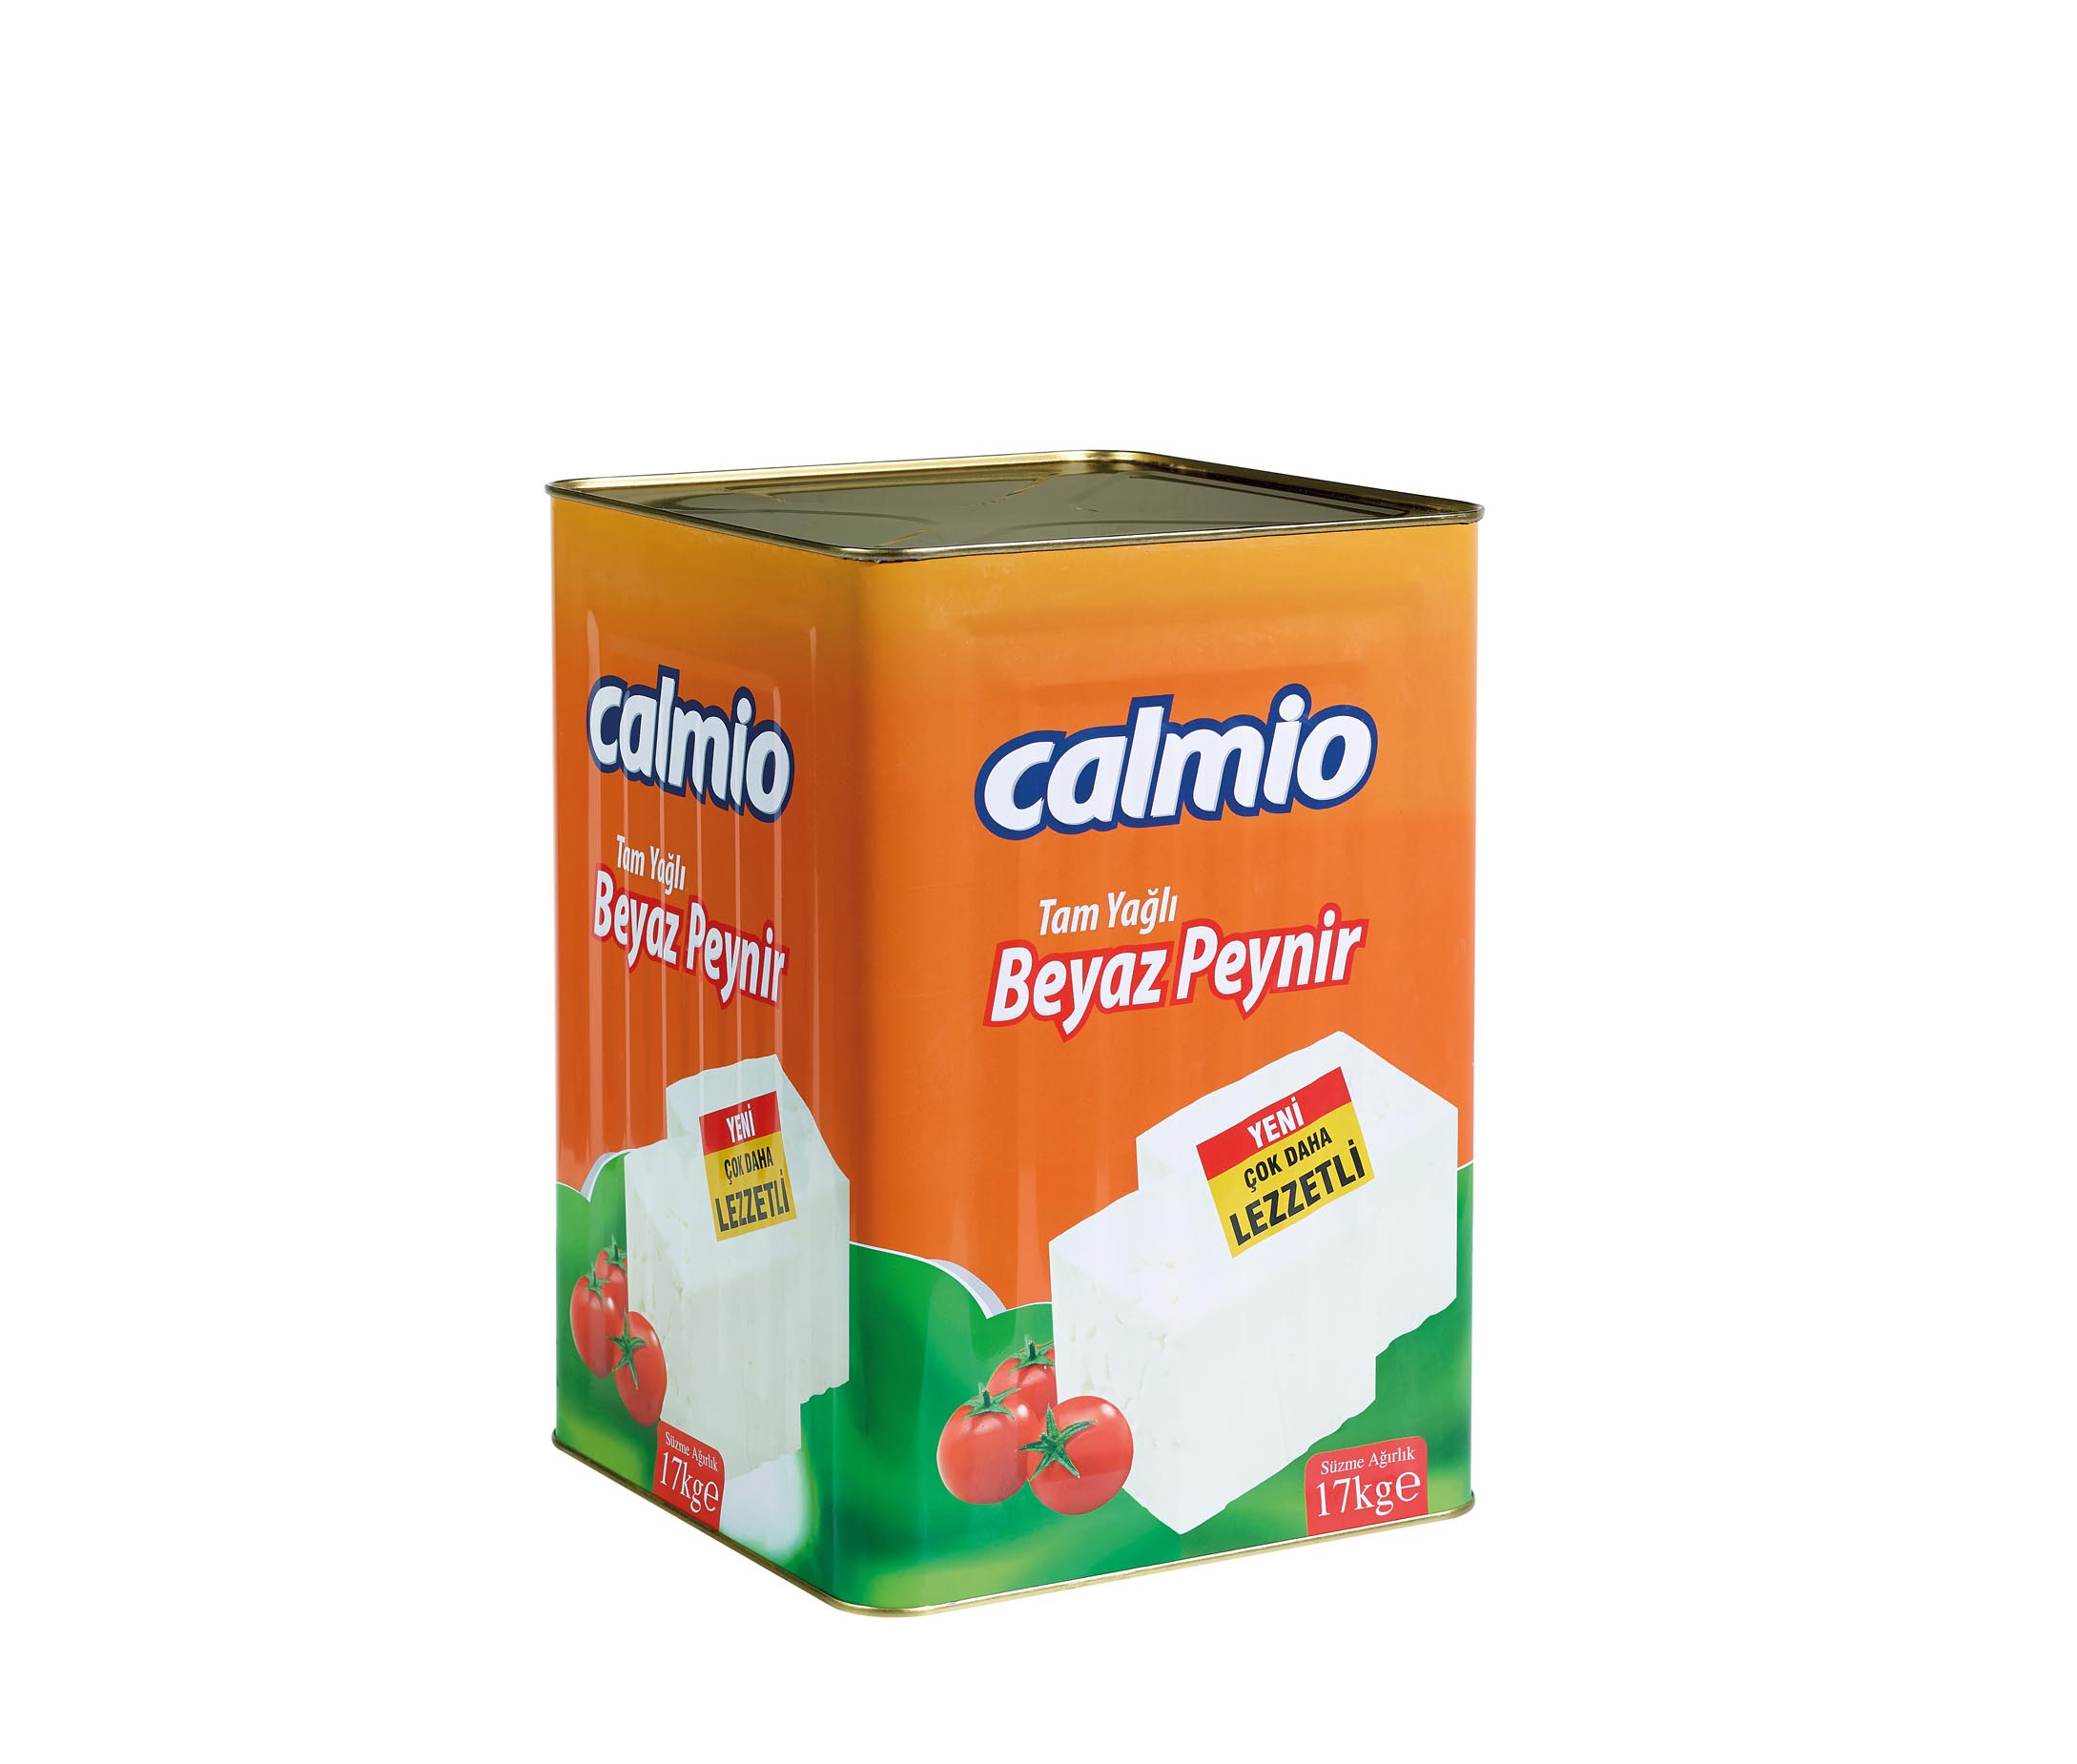 Calmio Tam Yağlı Beyaz Peynir 17 kg 